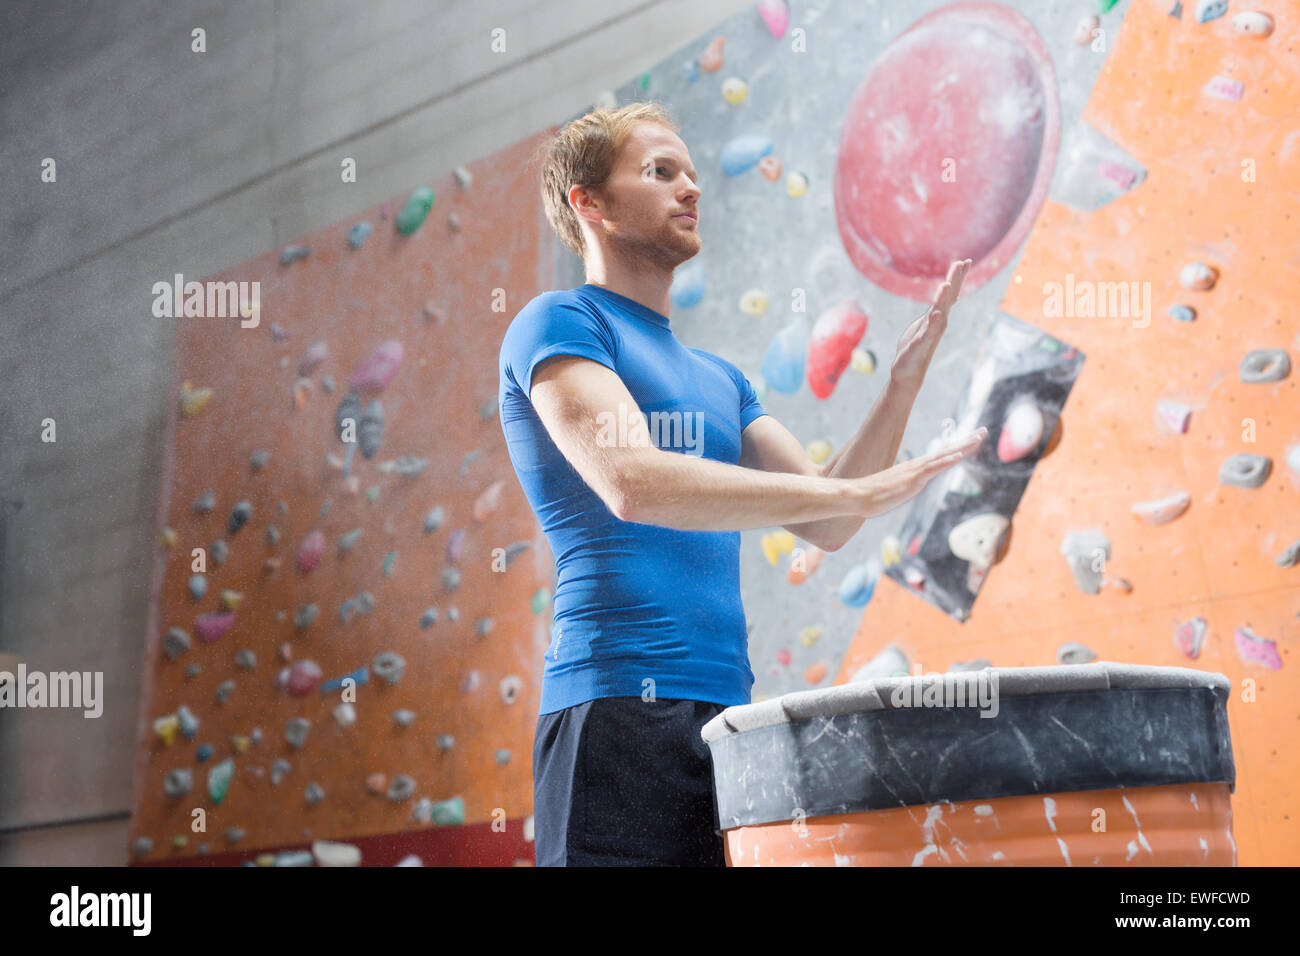 Low angle view of man dusting poudre en mur d'escalade en salle de sport crossfit Banque D'Images